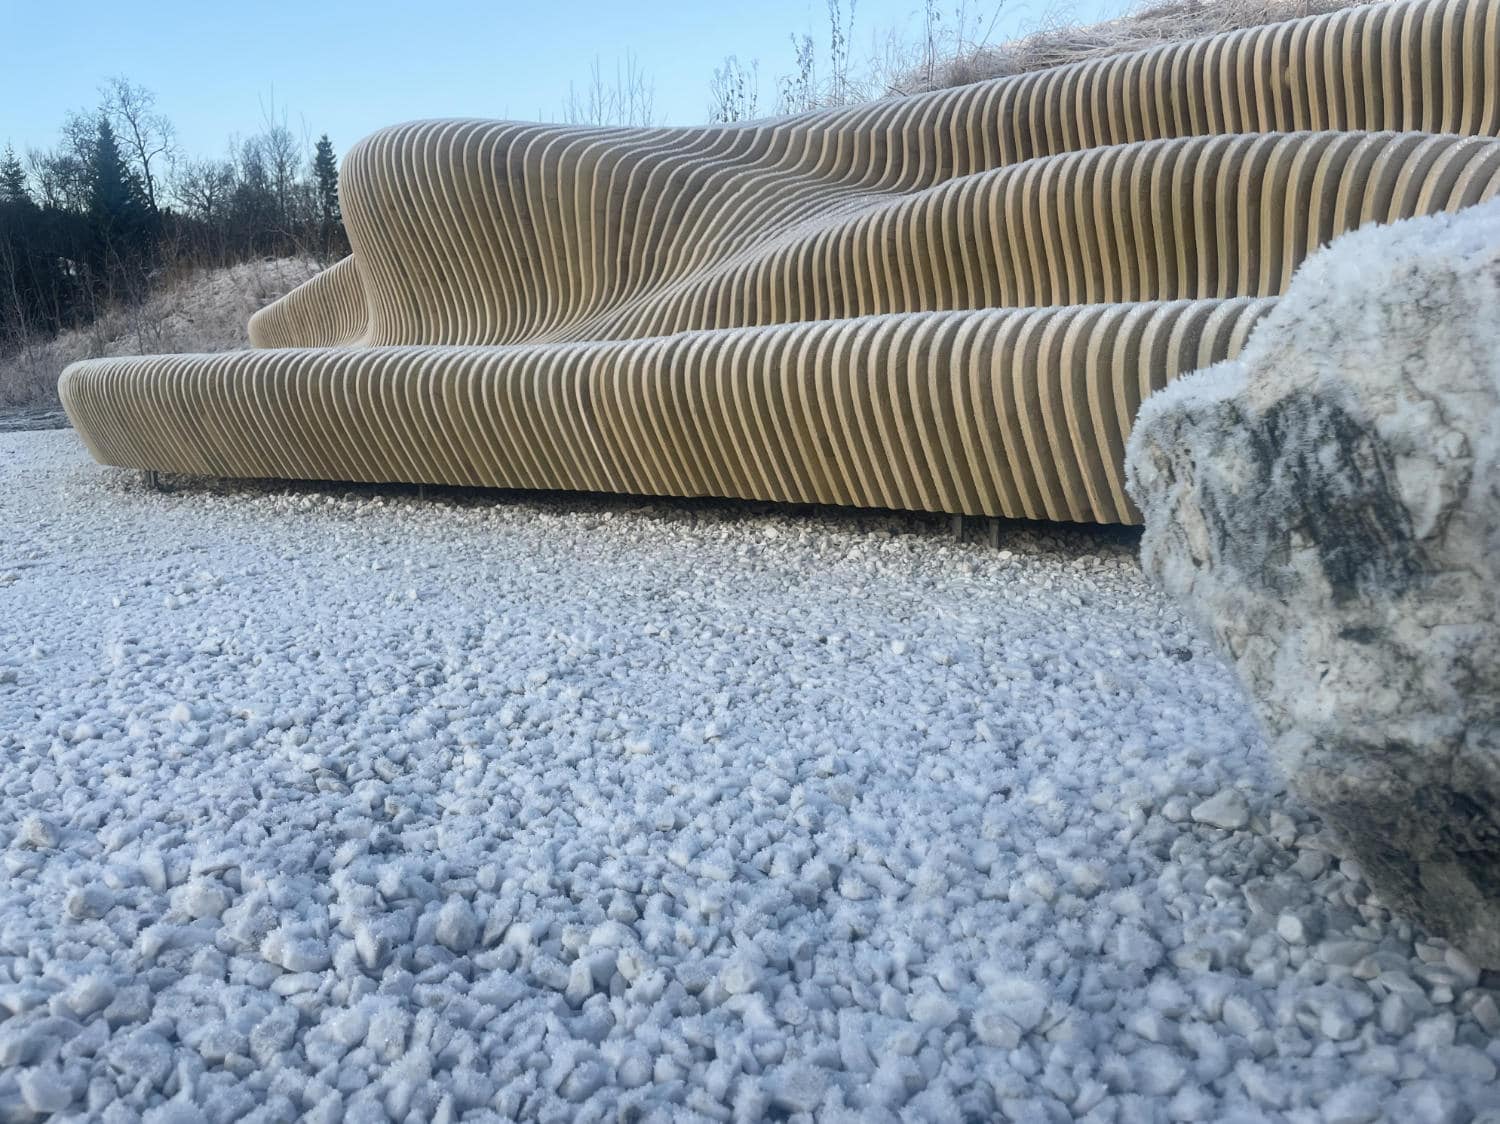 Community Landscape - Parametric design in the Frozen Arctic